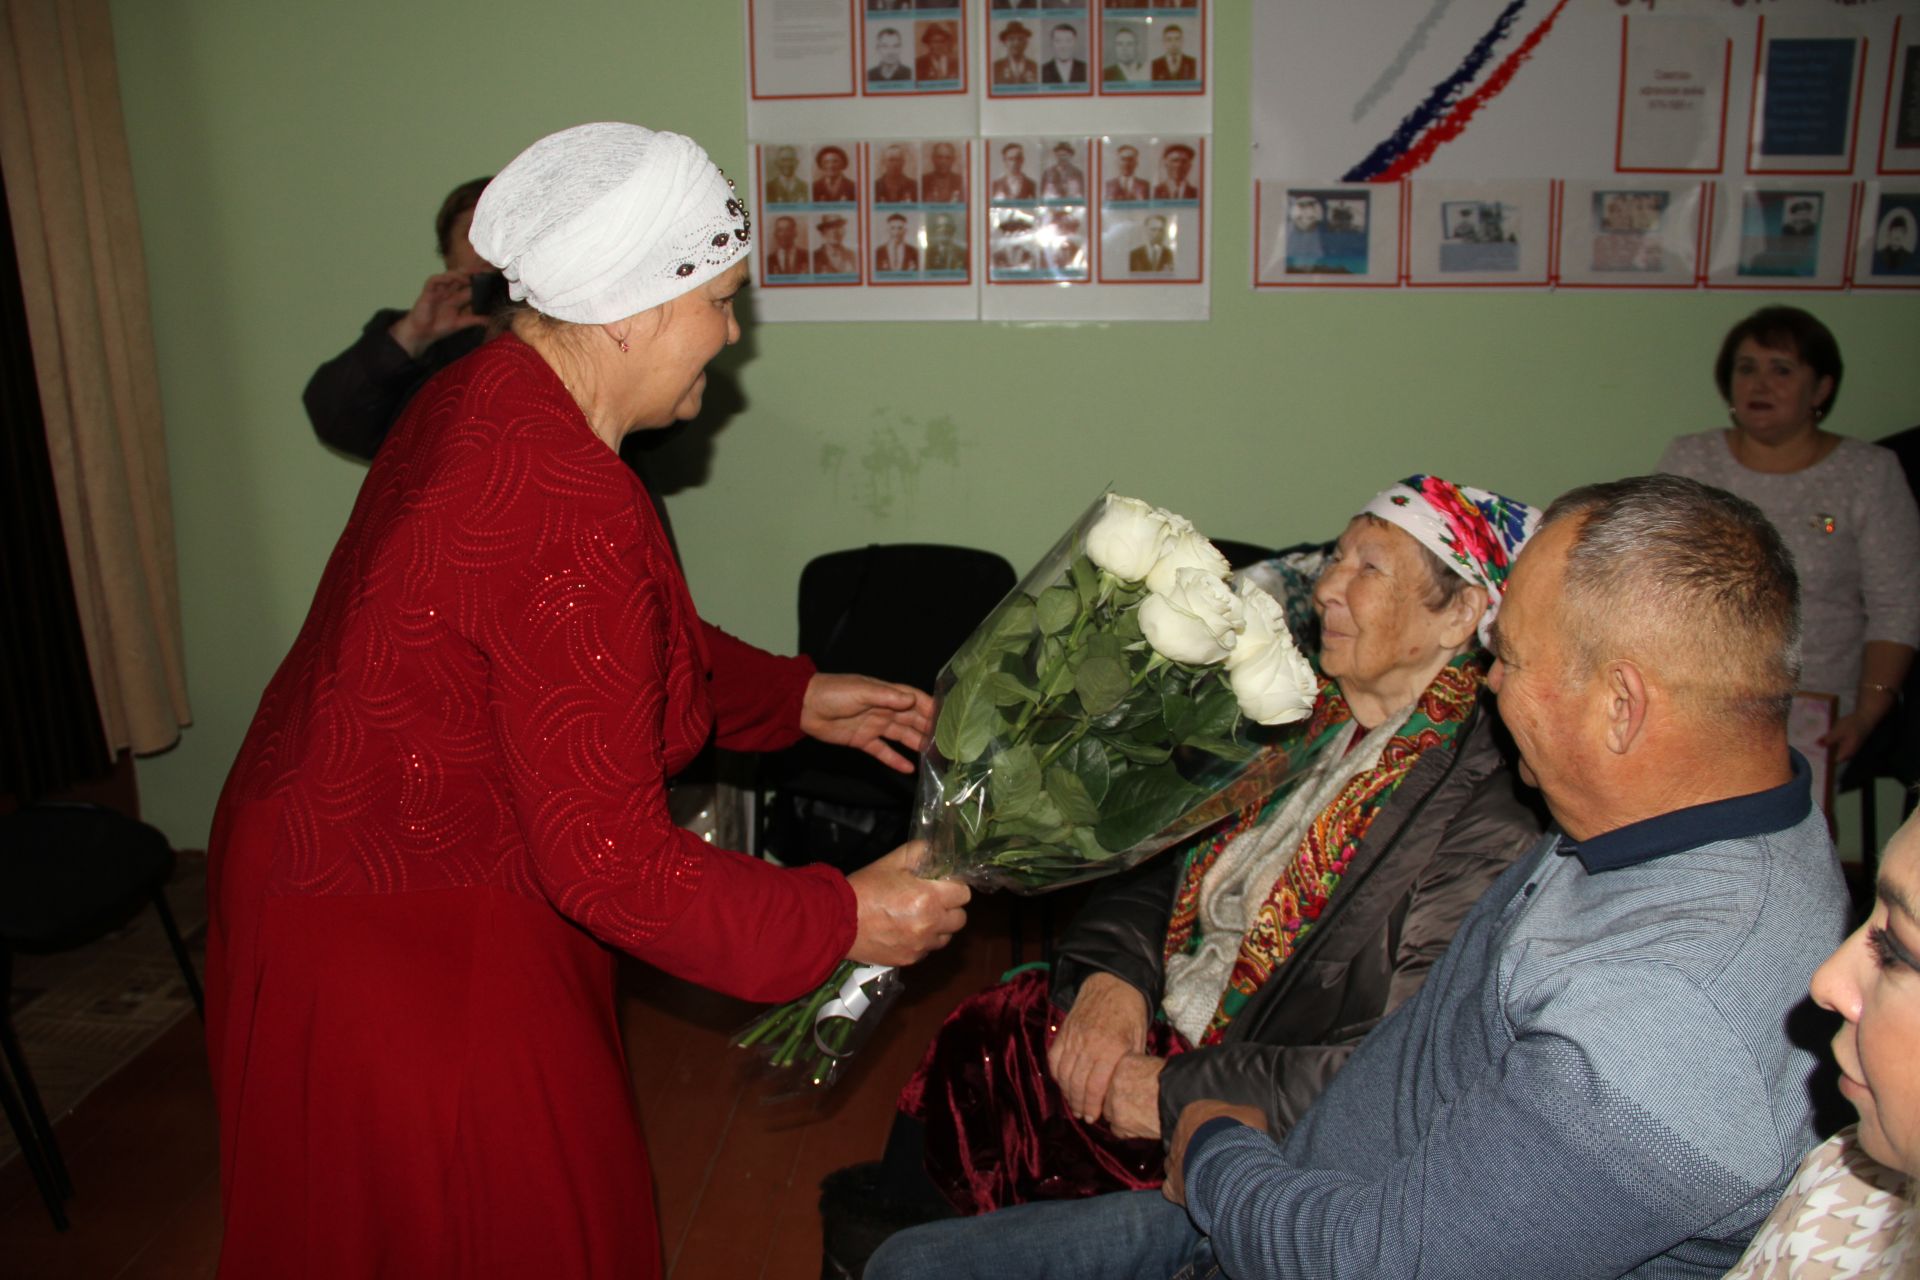 Салисә Гәрәеваның 85 яшьлек юбилеена багышланган әдәби-музыкаль кичә үткәрелде